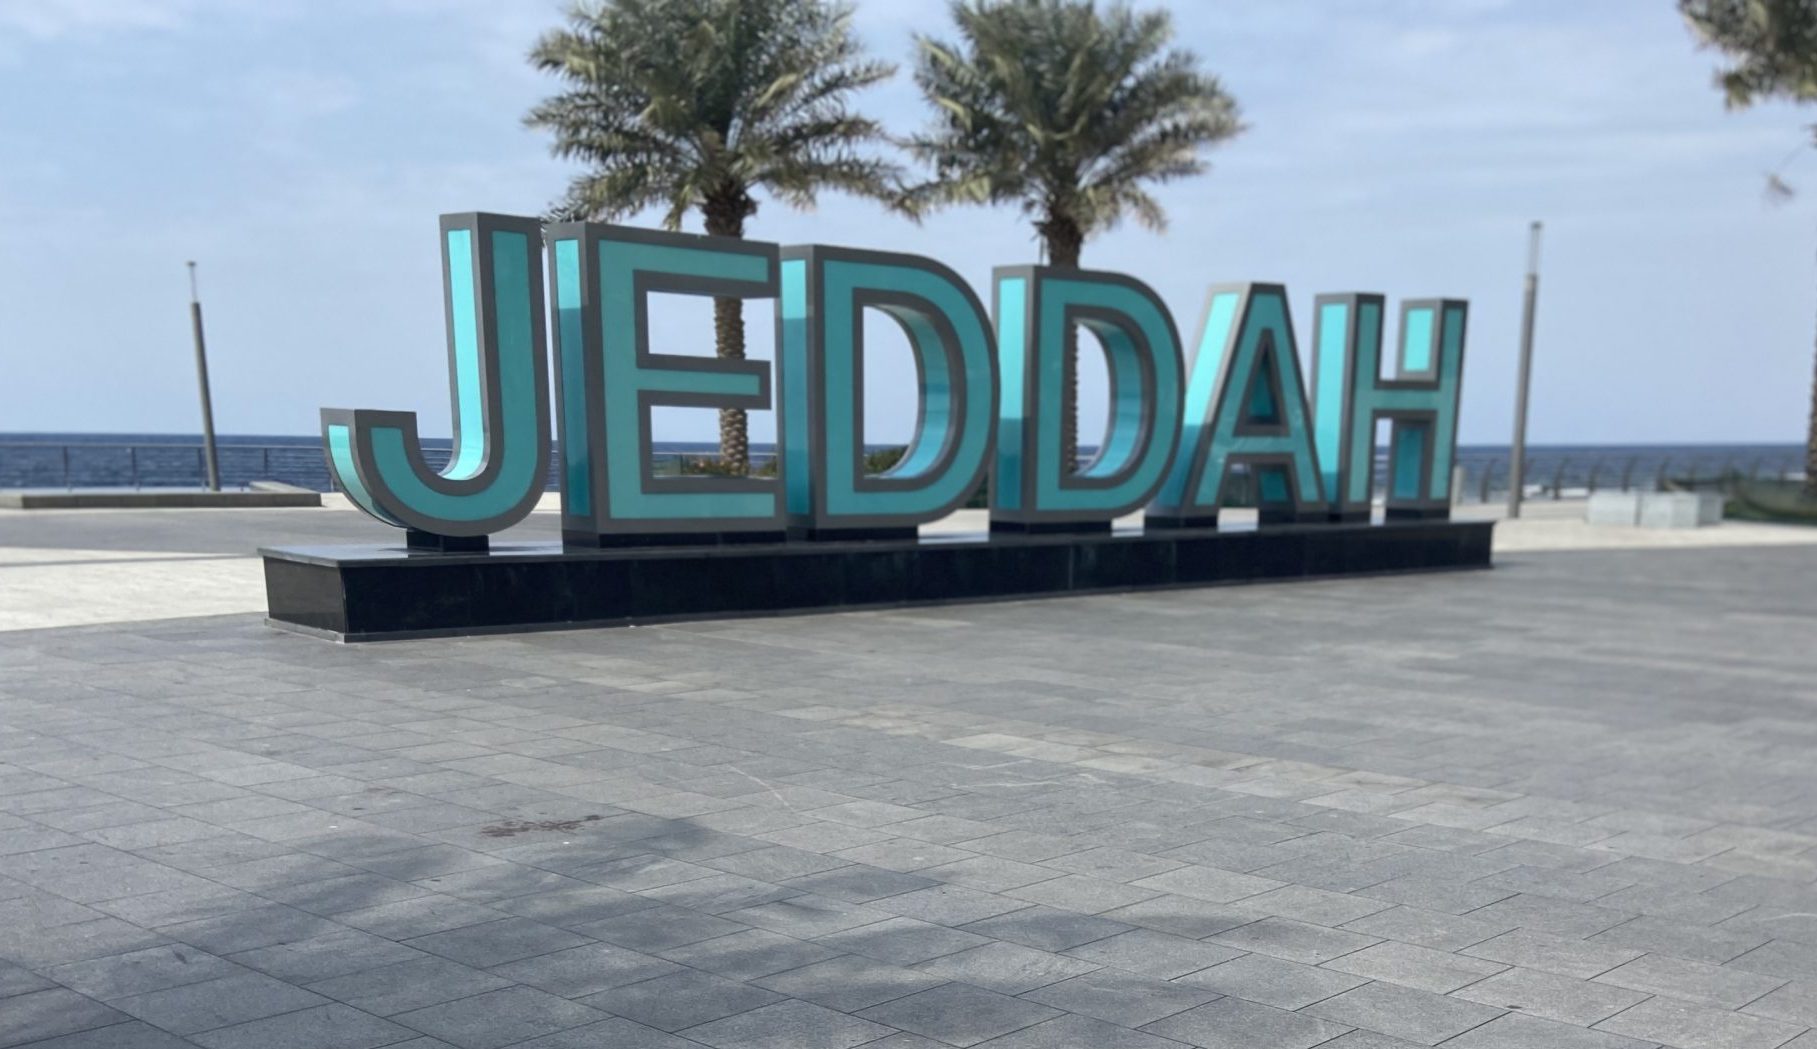 Jeddah Sign